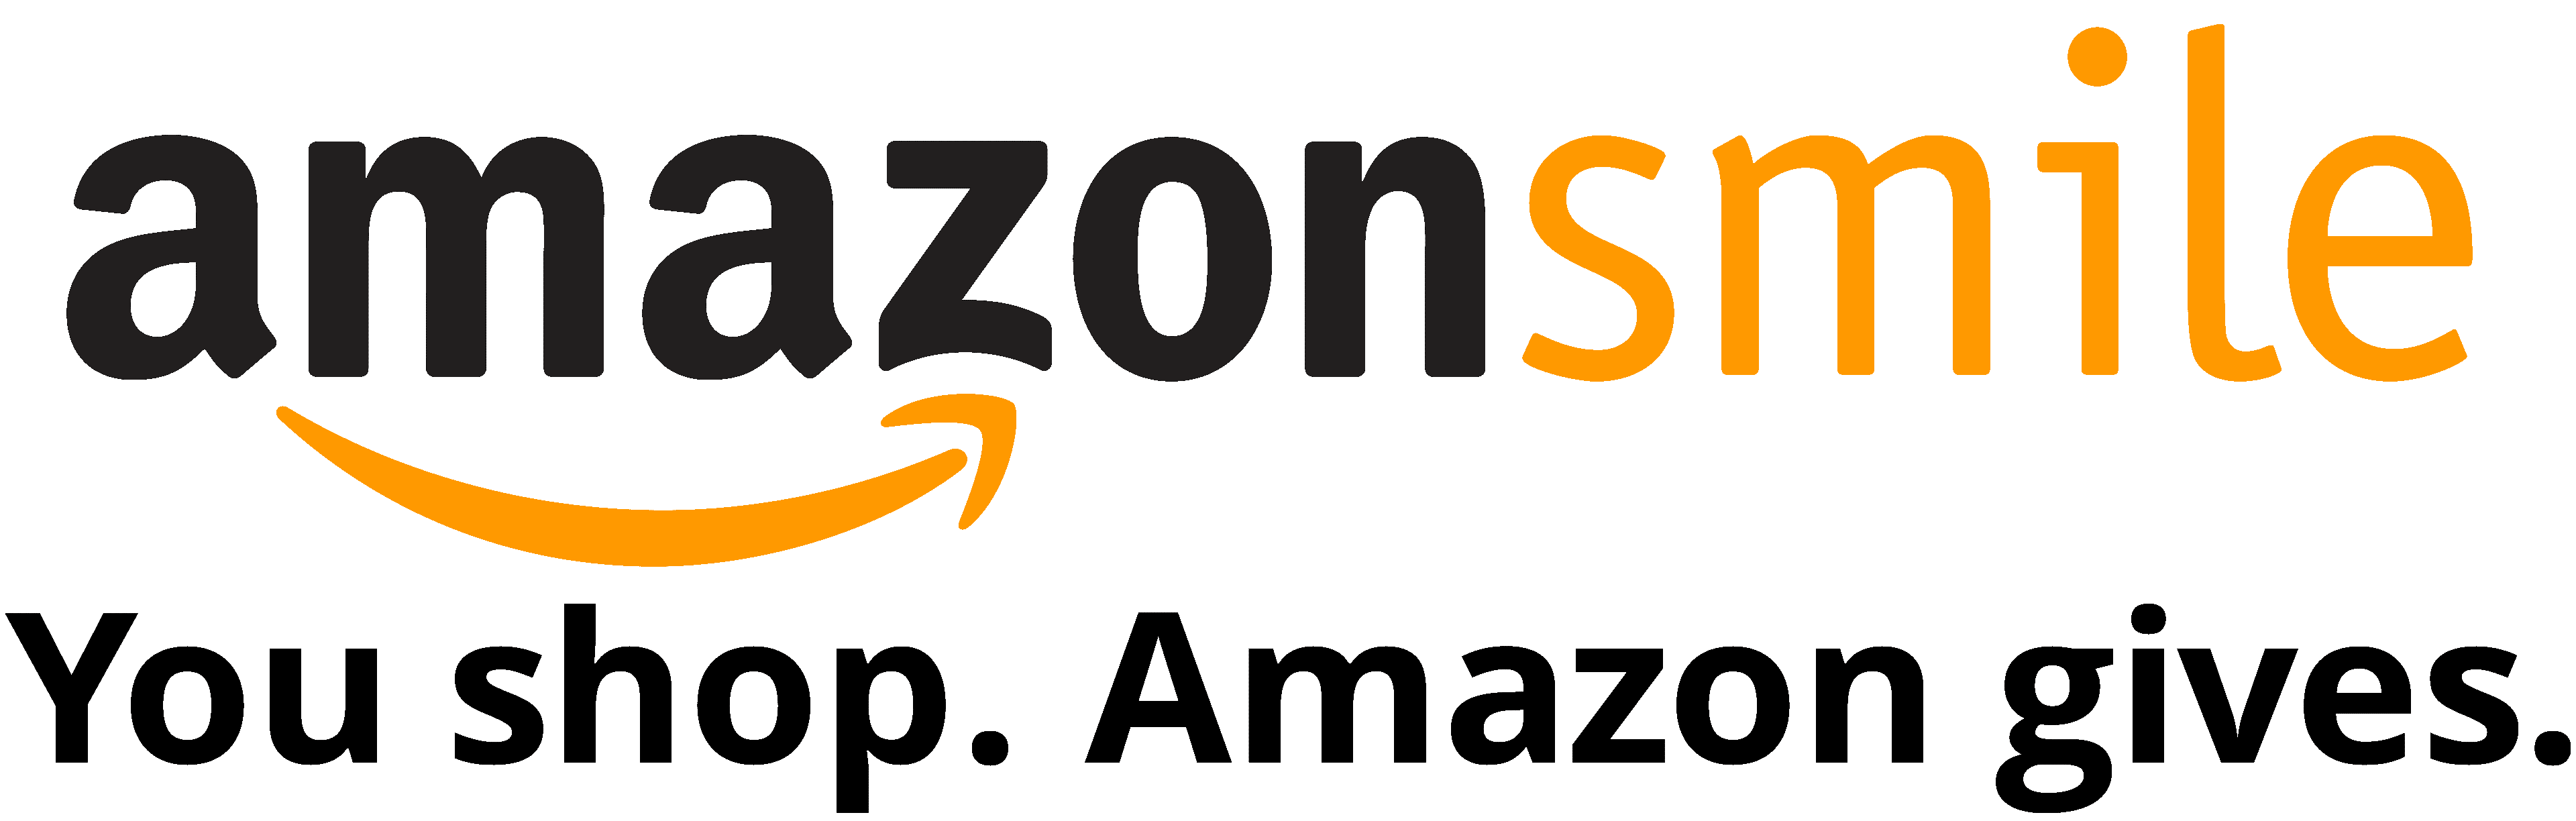 Amazon-Smile-Logo2